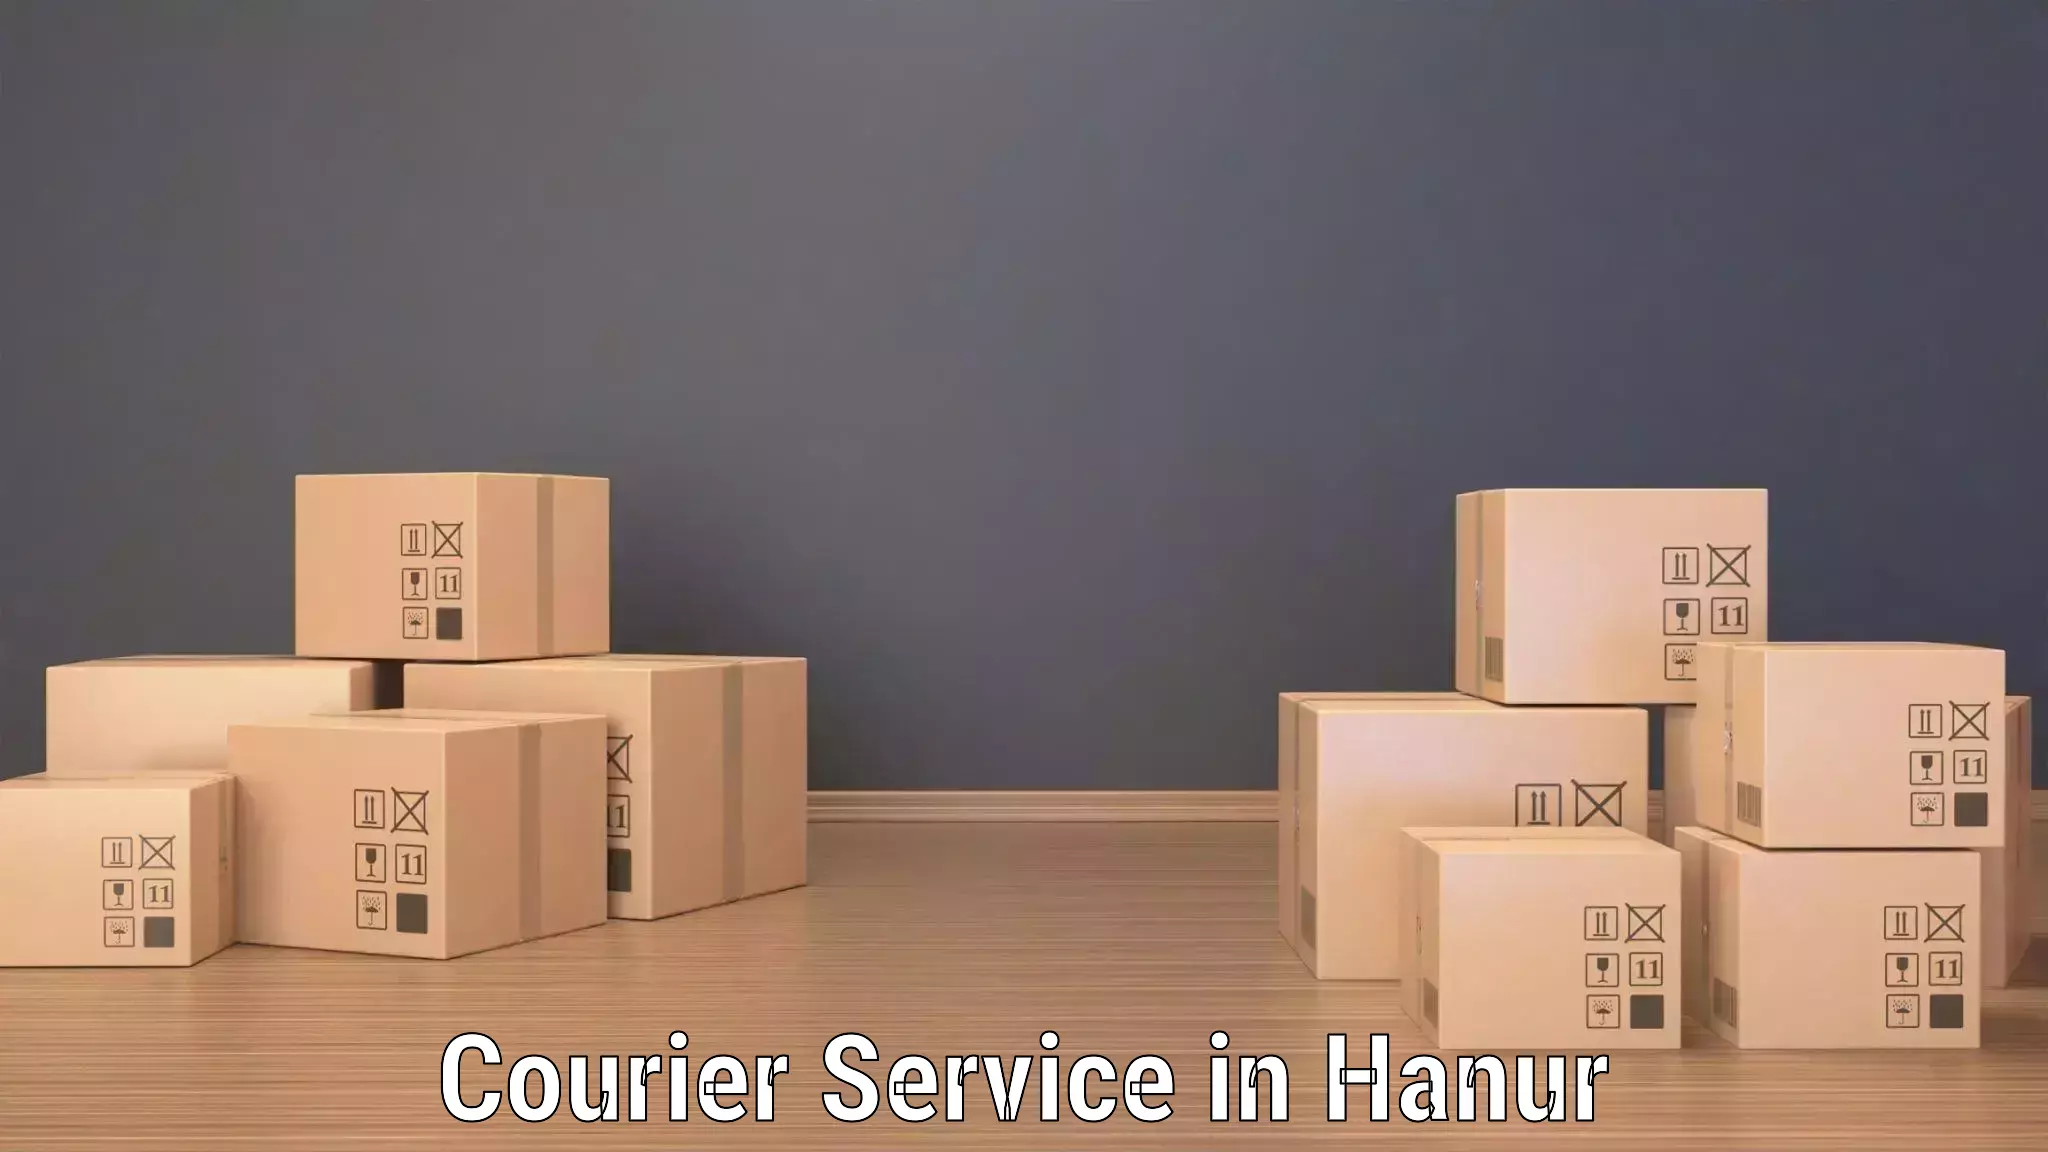 Logistics management in Hanur